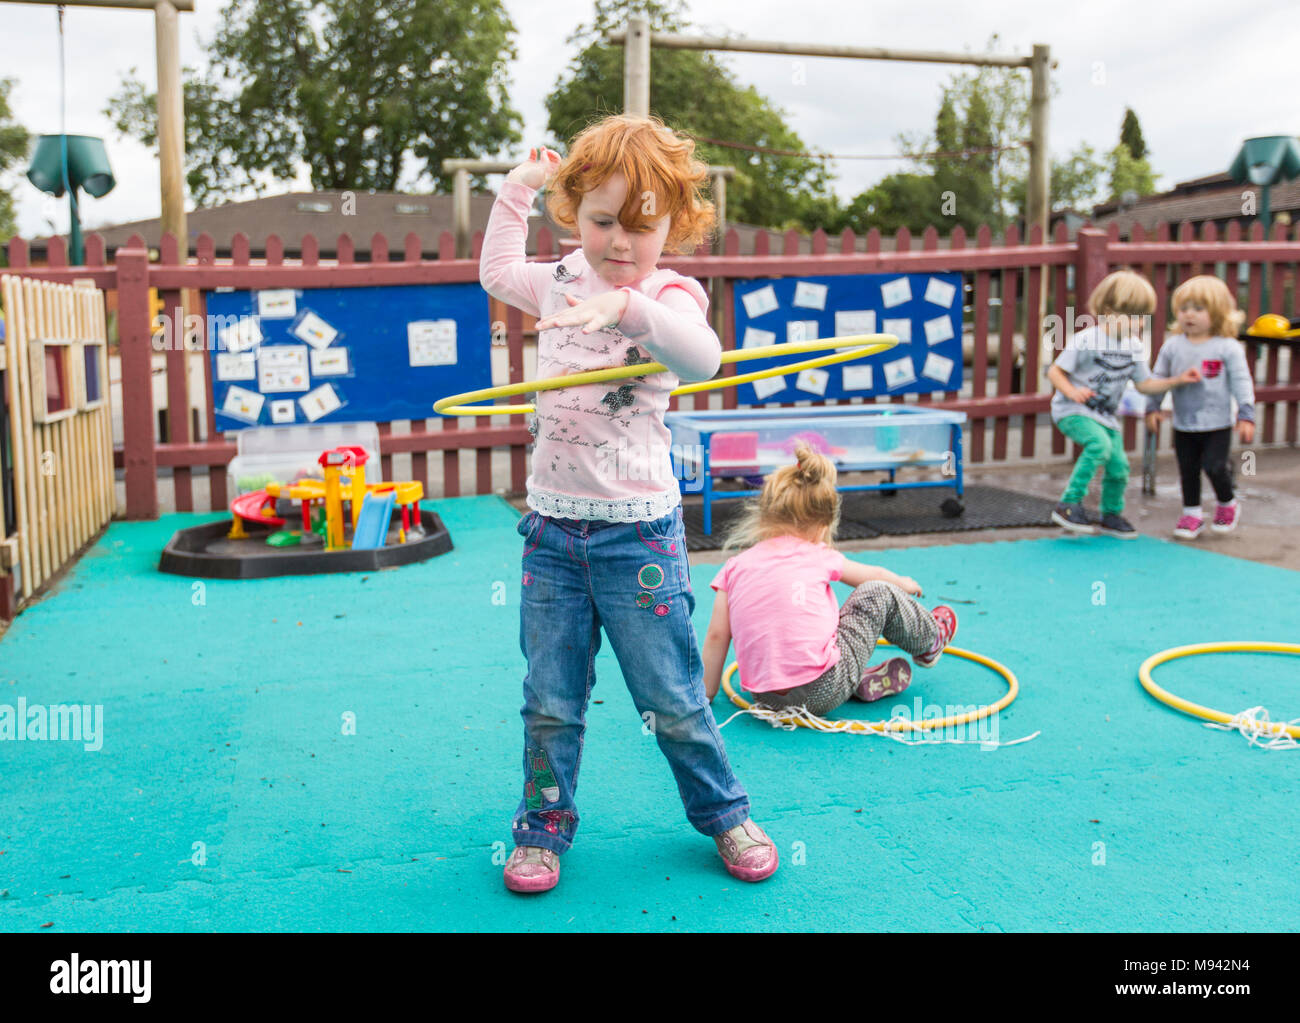 L'école maternelle des enfants jouent dans une aire de jeux dans le Warwickshire, Royaume-Uni Banque D'Images